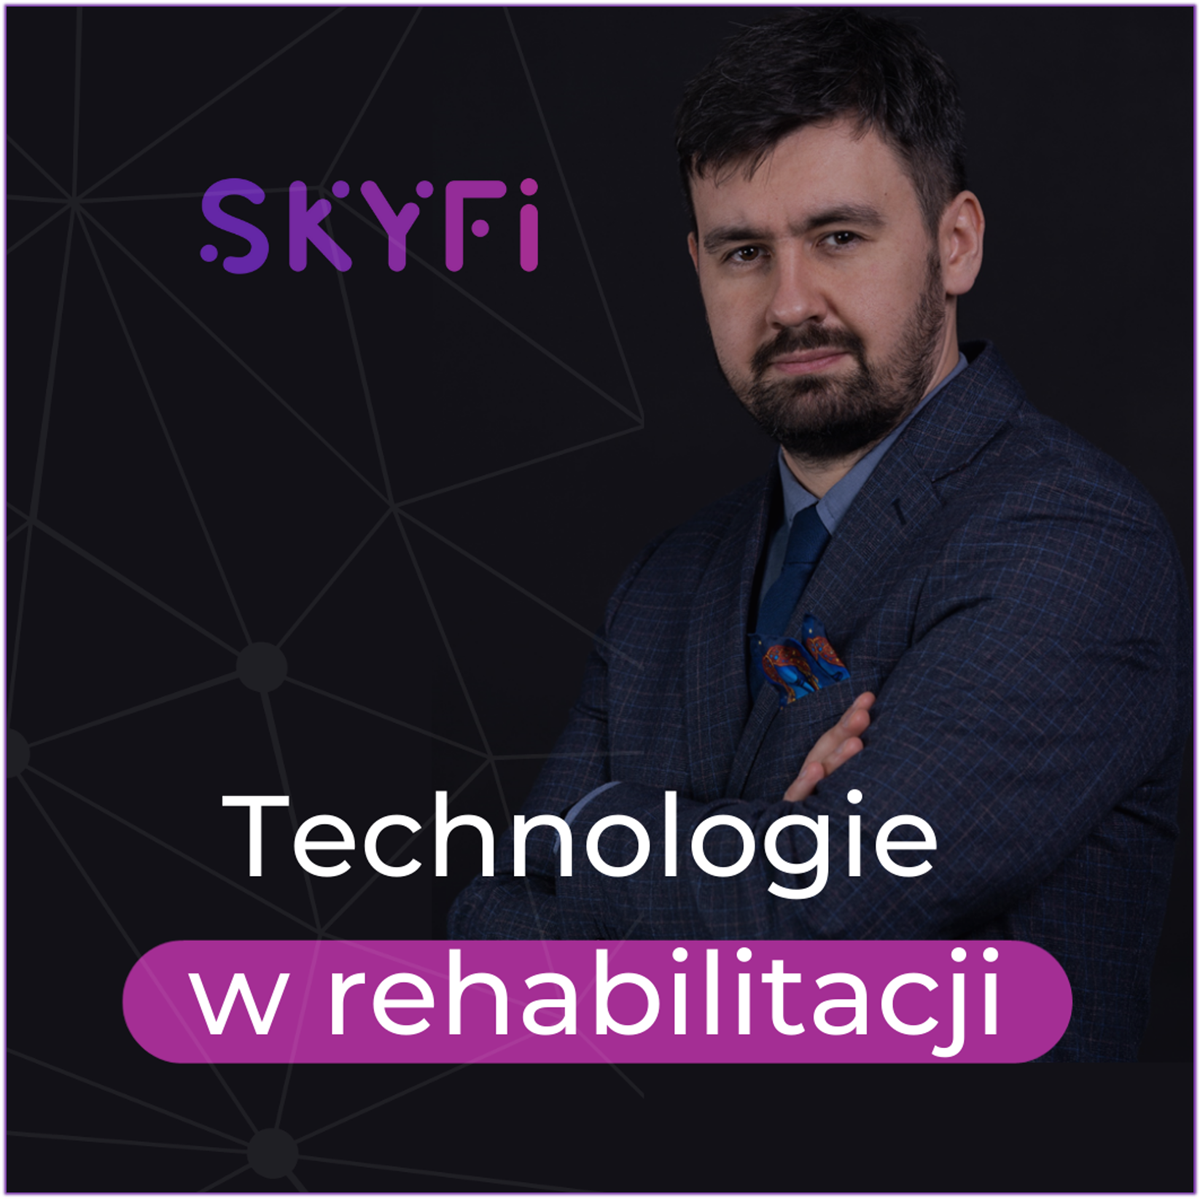 Skyfi-Podcast-007-diagnostyka-i-obiektywizacja